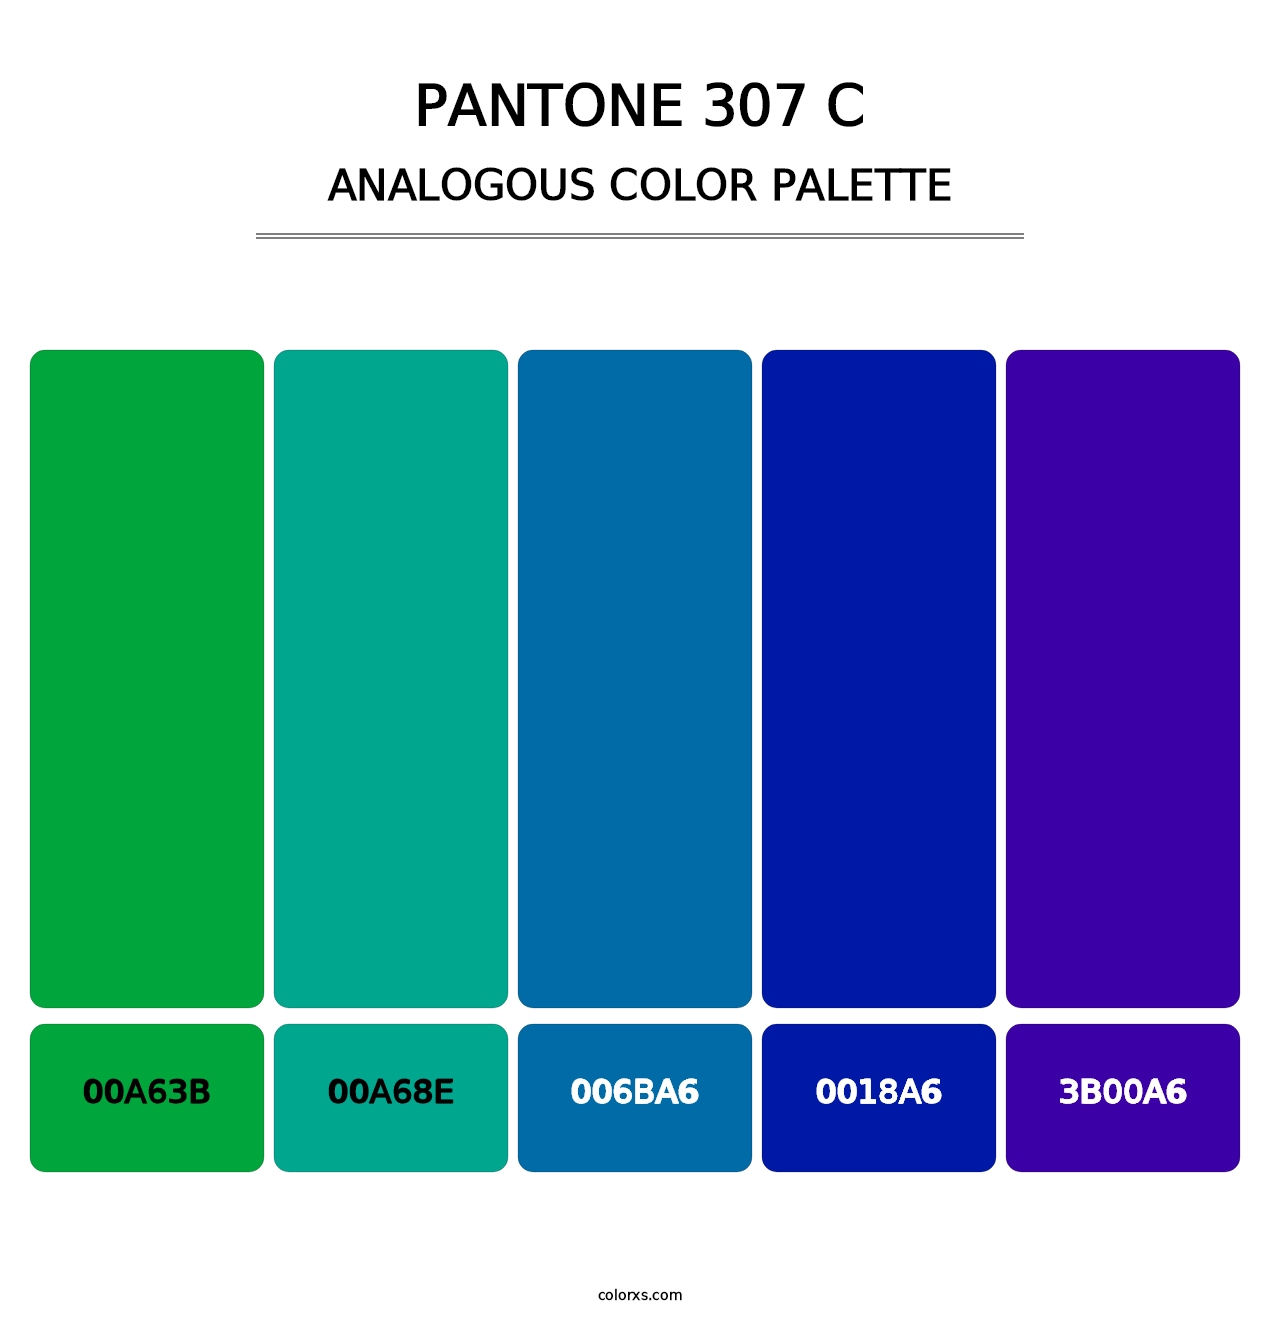 PANTONE 307 C - Analogous Color Palette